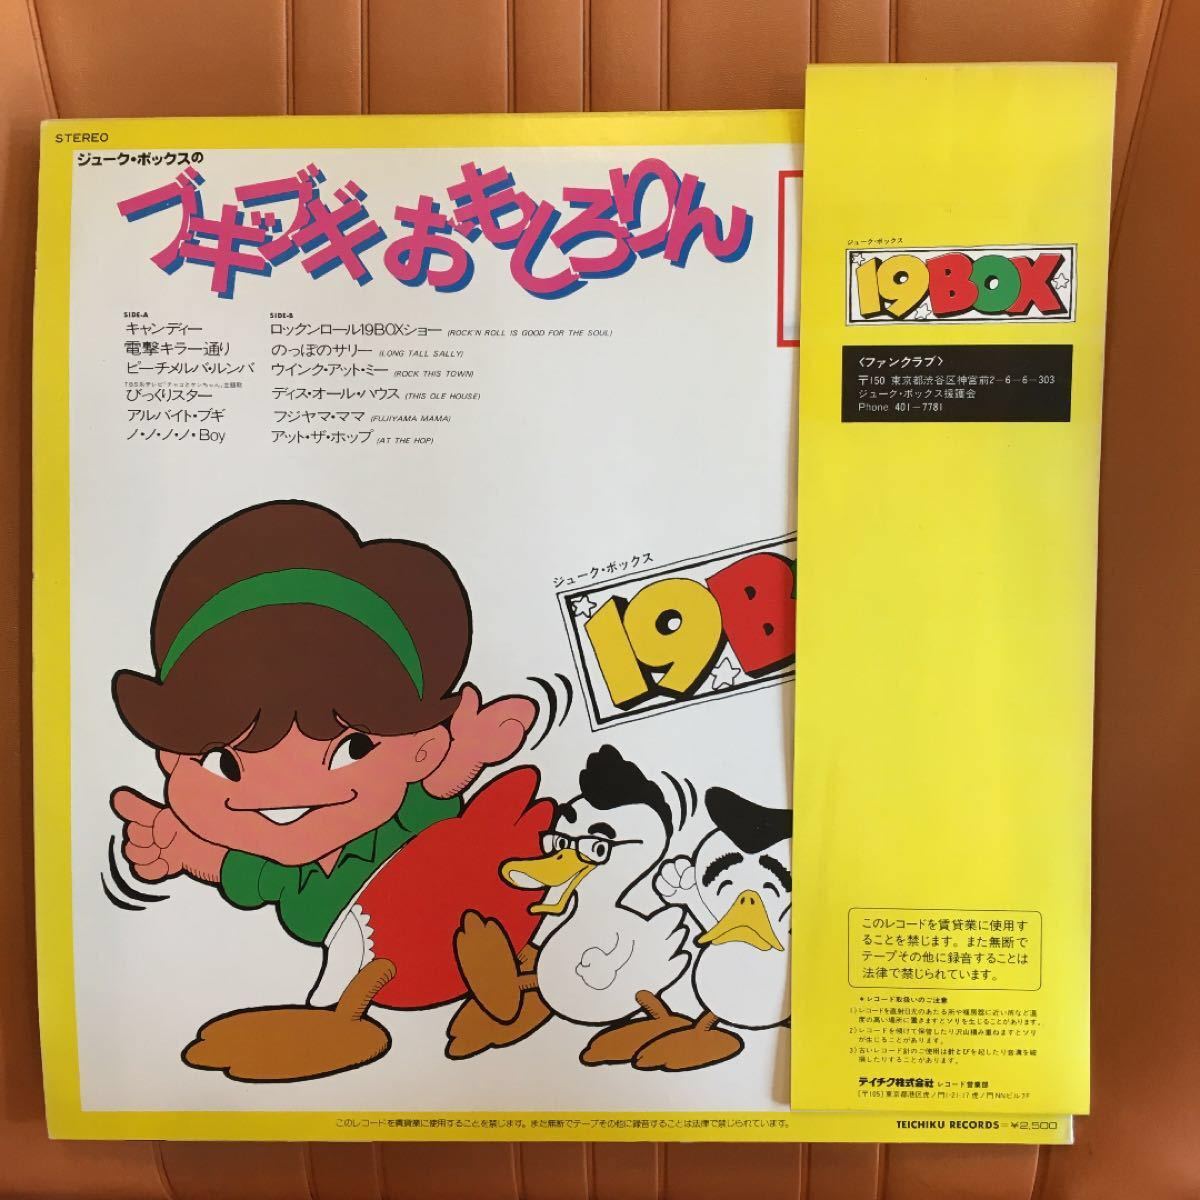 19BOX のおもしろりん ストレイ・キャッツ日本語カバー収録 レコード - 1